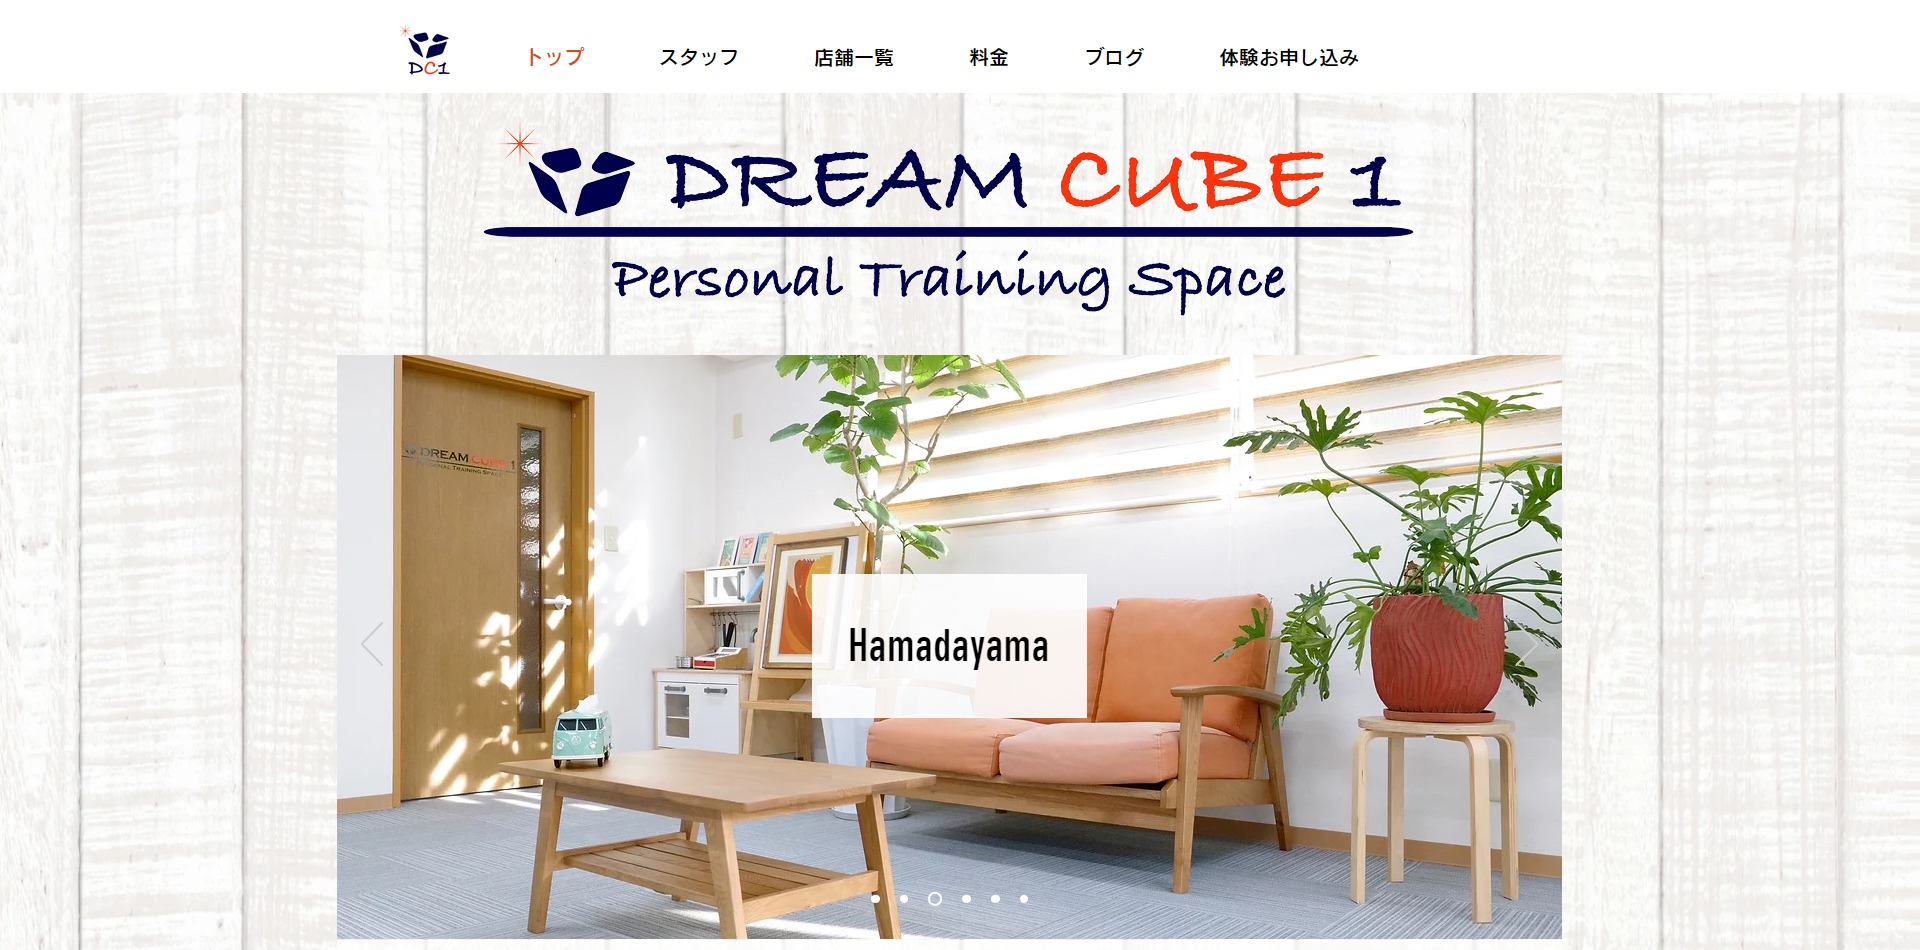 パーソナルトレーニングジム DREAM CUBE 1 吉祥寺本店